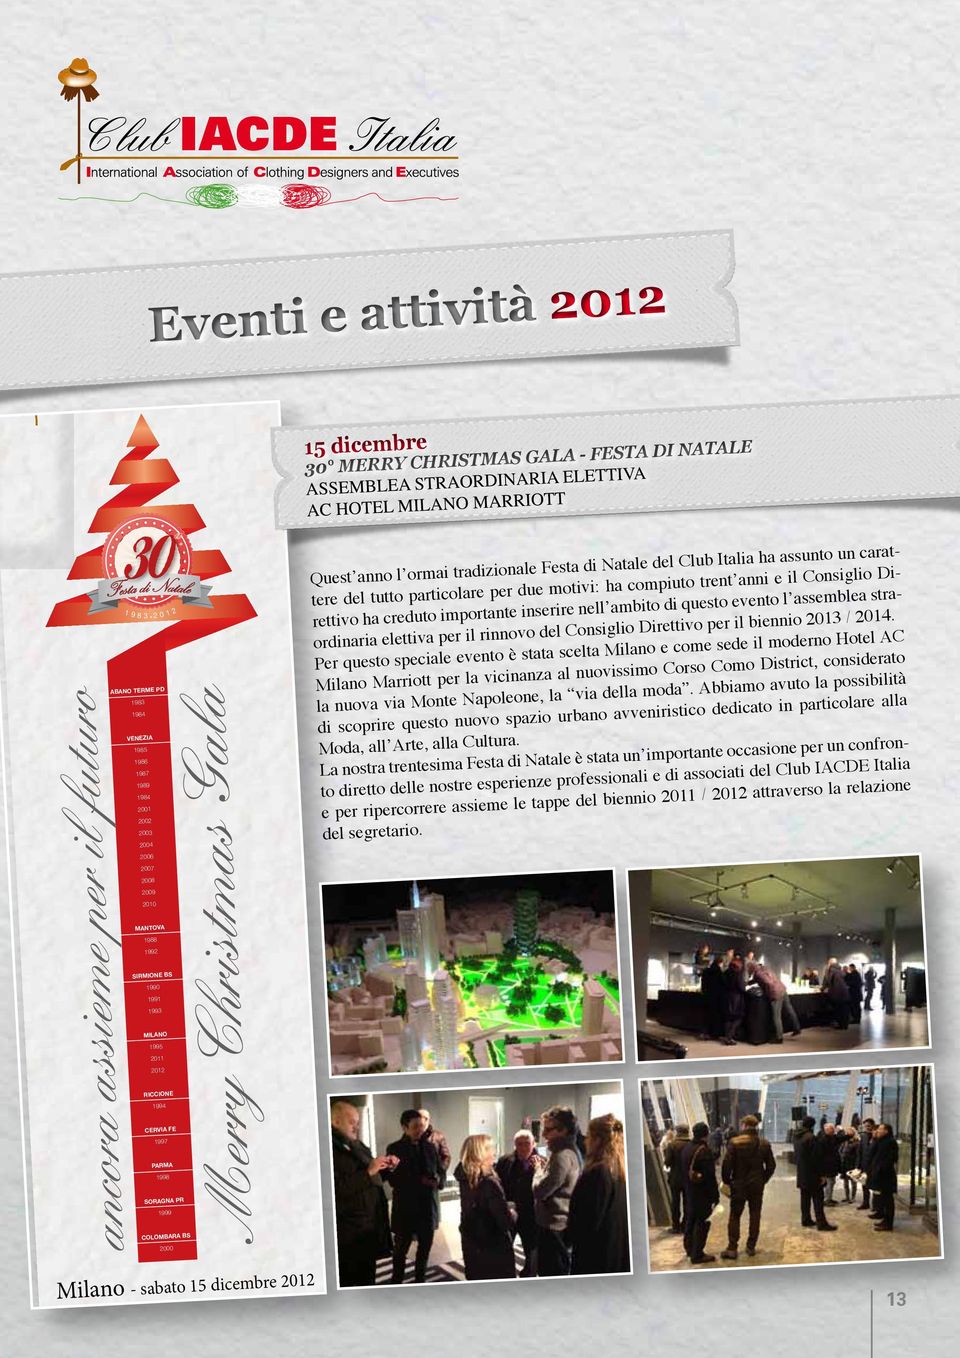 inserire nell ambito di questo evento l assemblea straordinaria elettiva per il rinnovo del Consiglio Direttivo per il biennio 2013 / 2014.